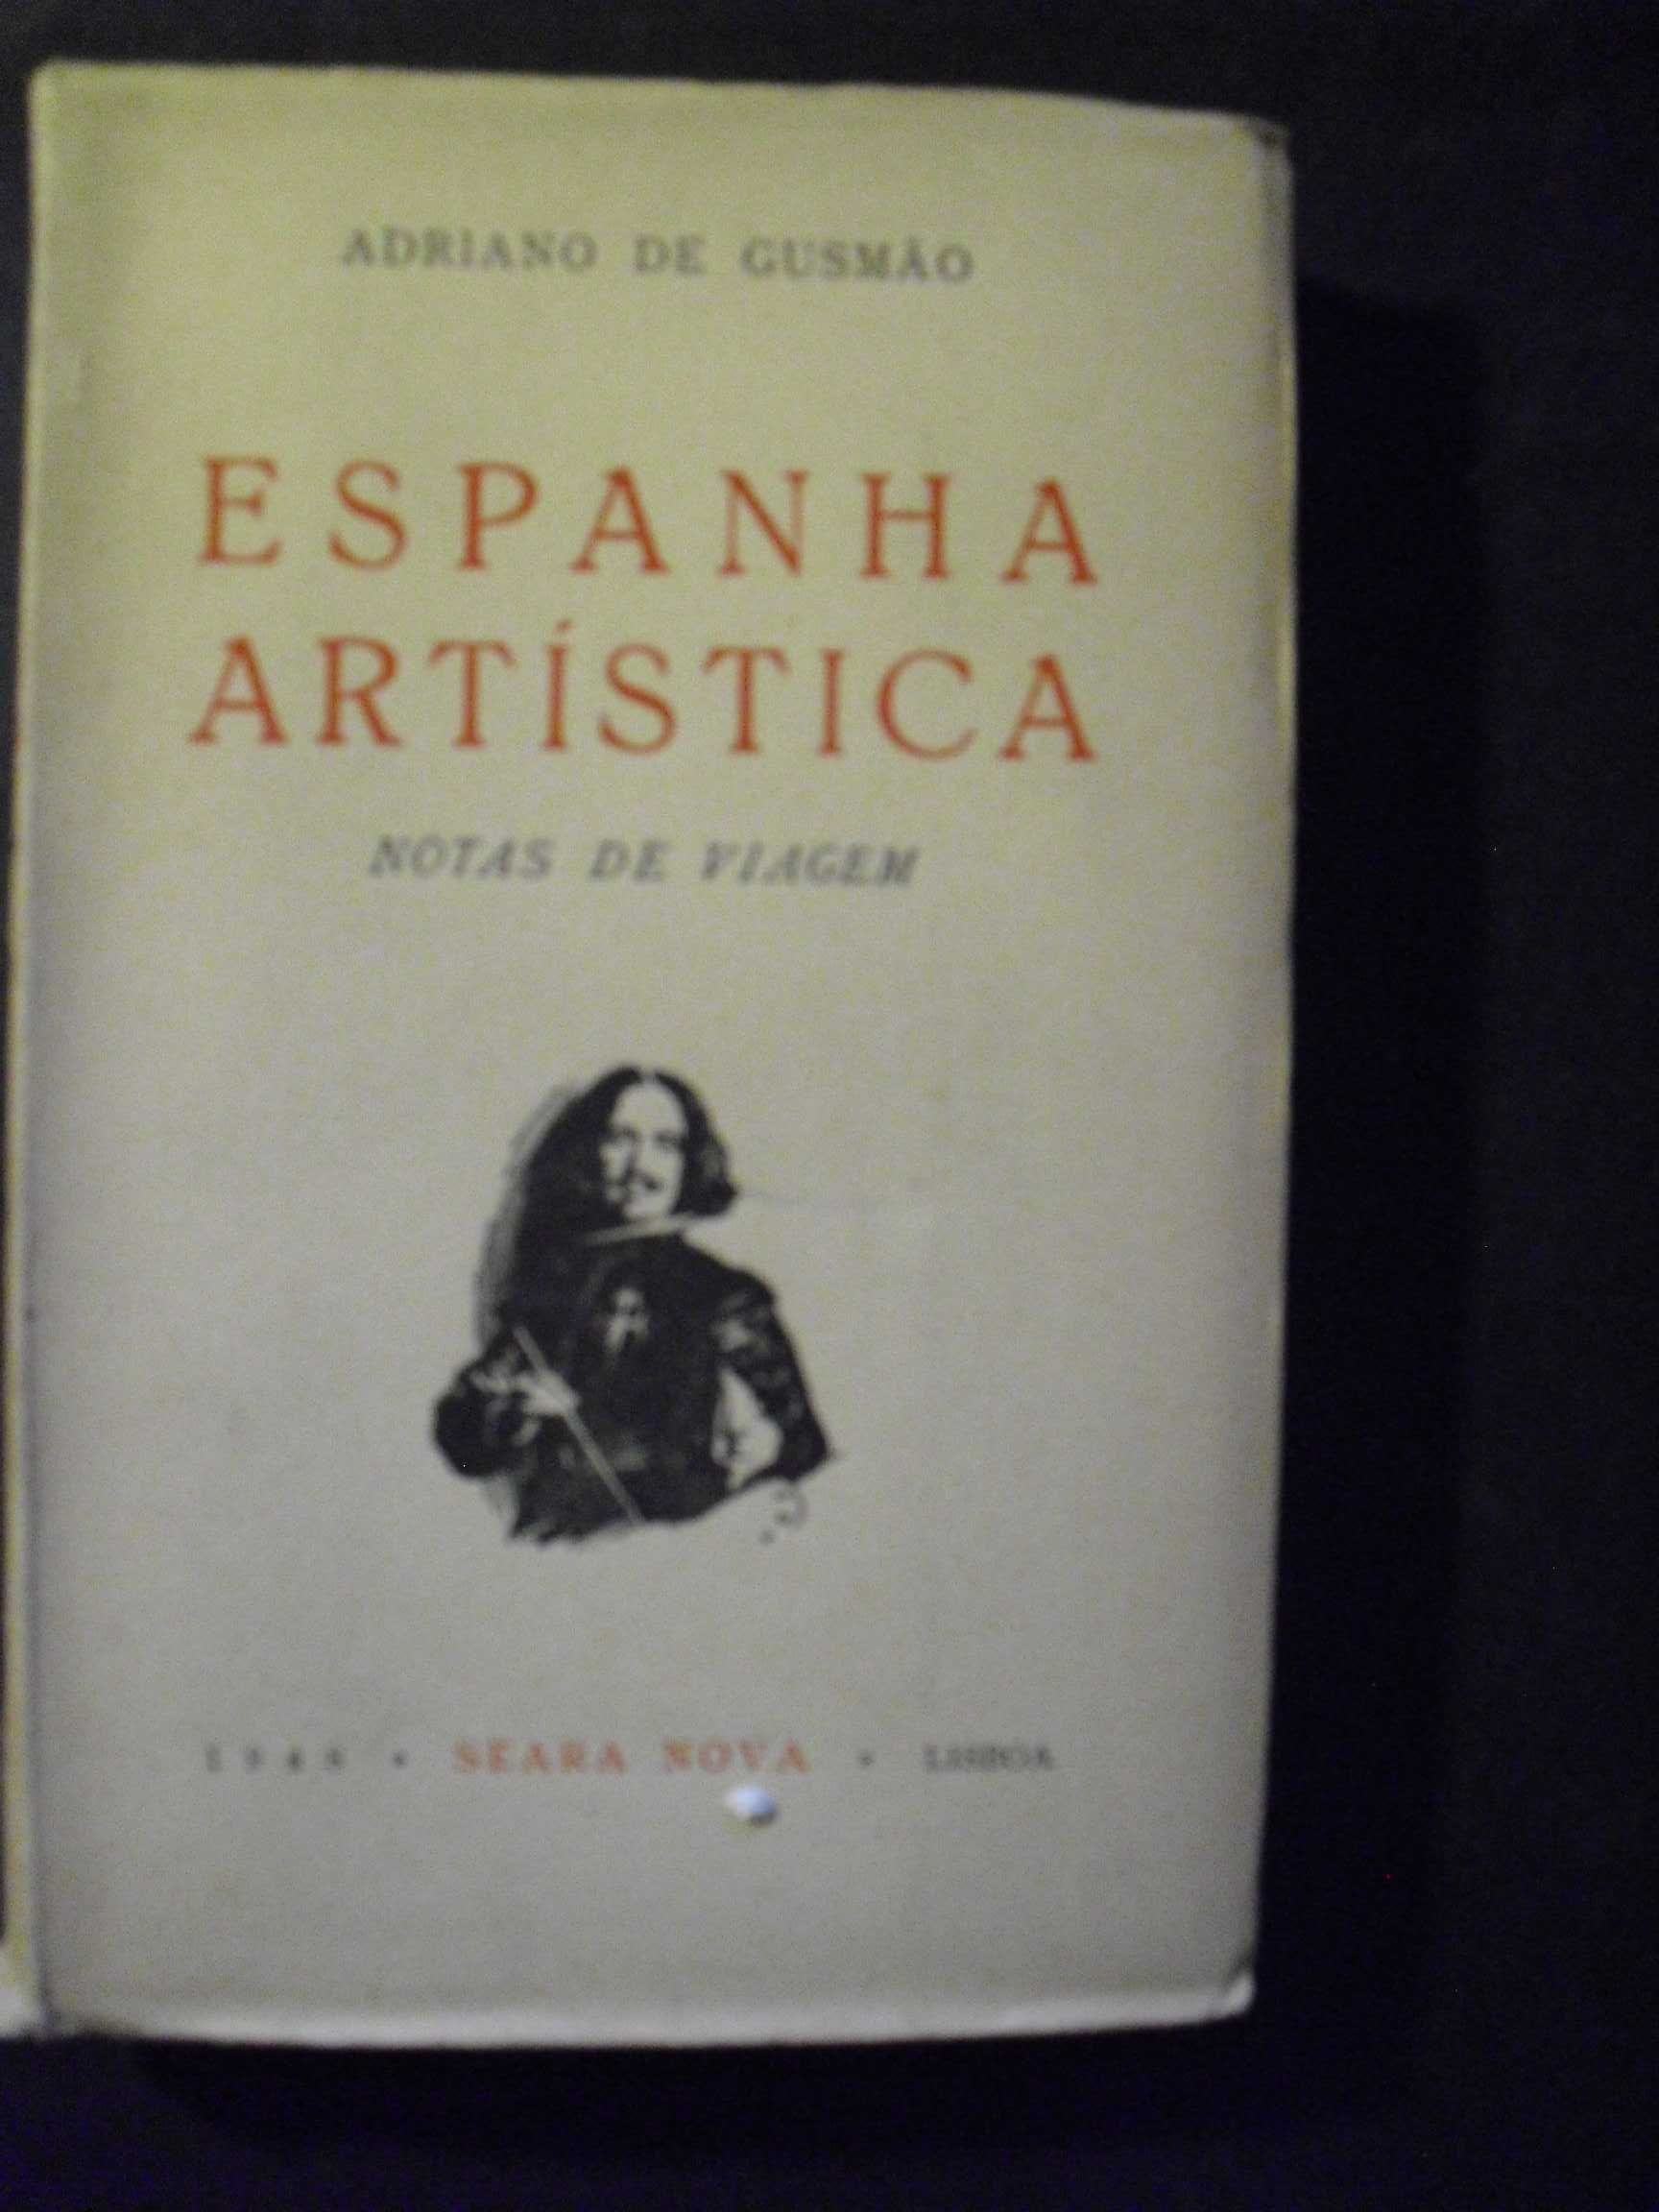 Gusmão (Adriano de);Espanha Artística-Notas de Viagem